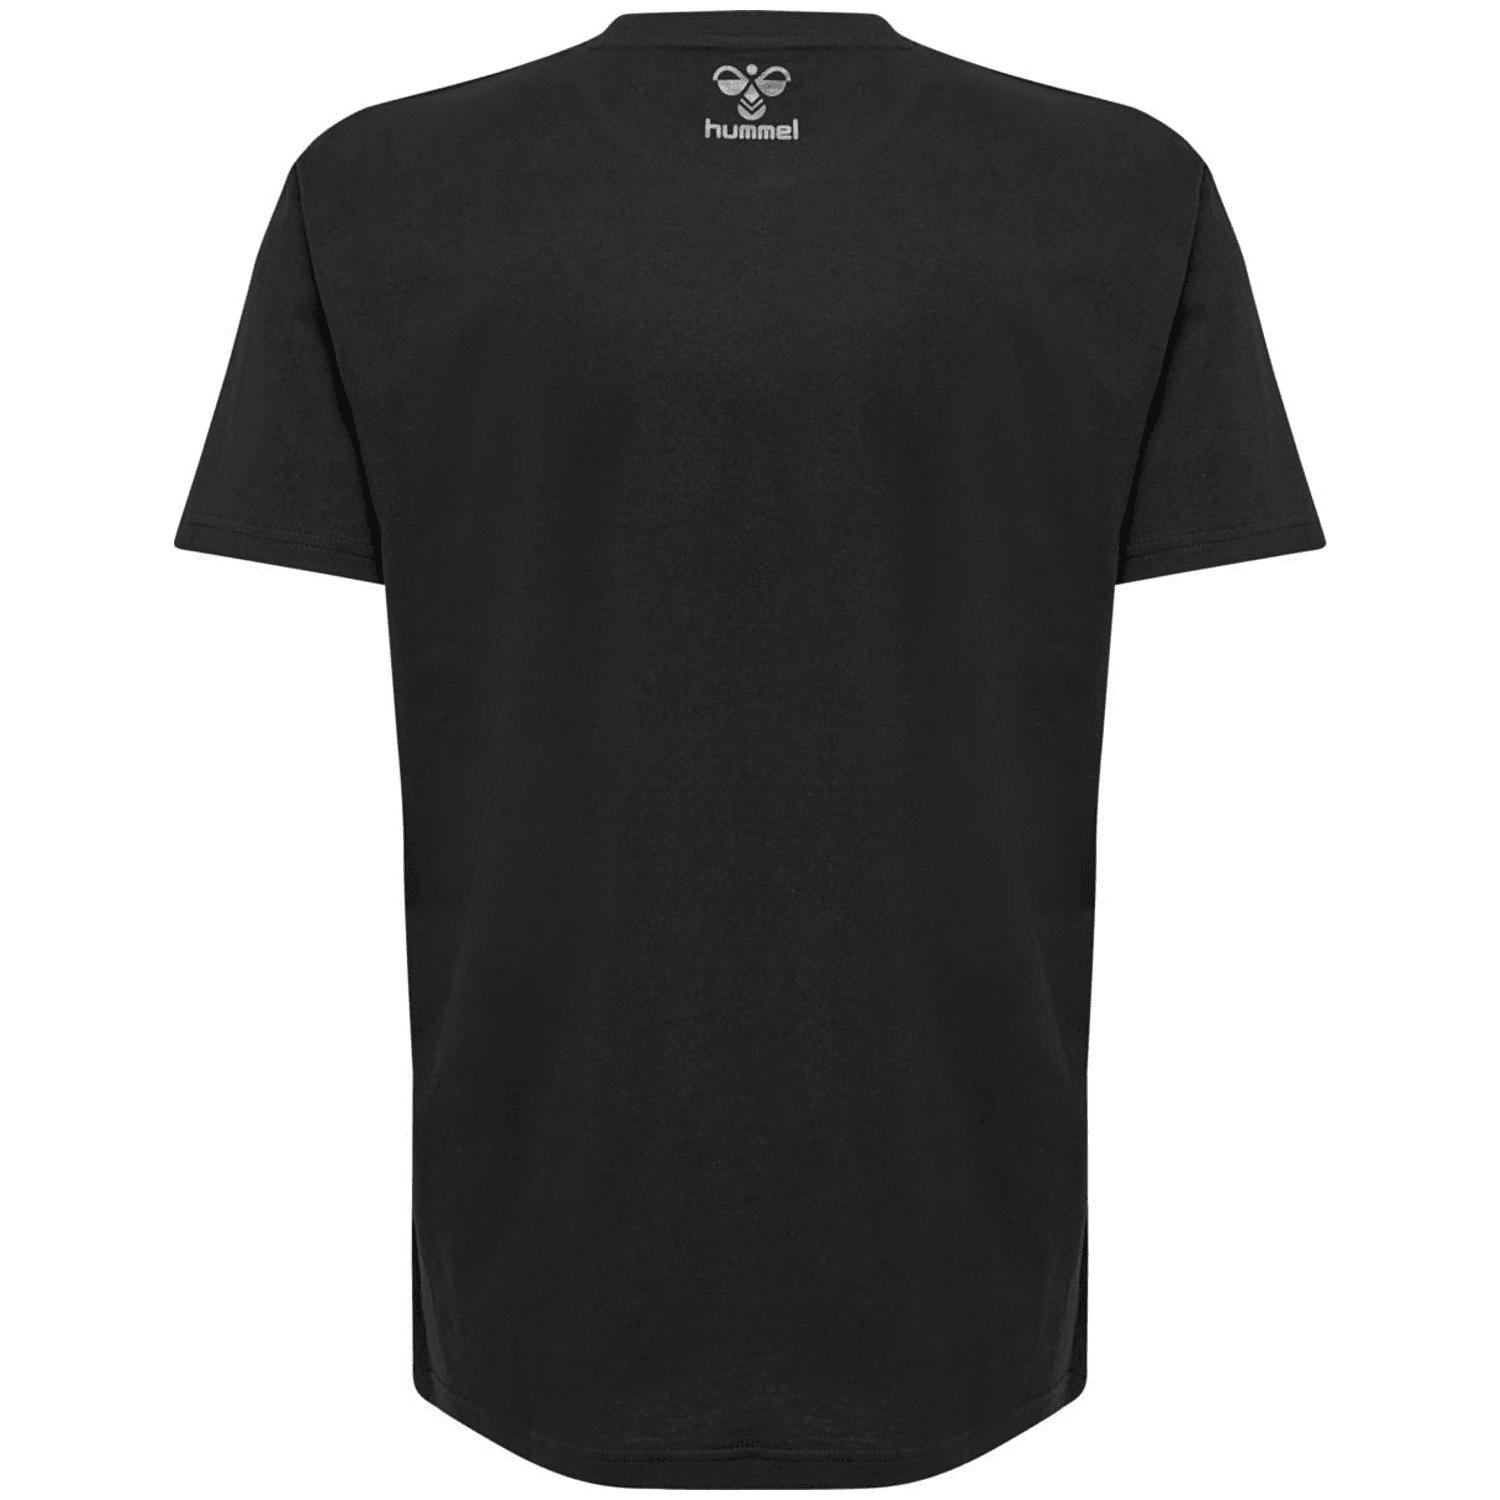 Hummel Offgrid Cotton Jersey Herren T-Shirt